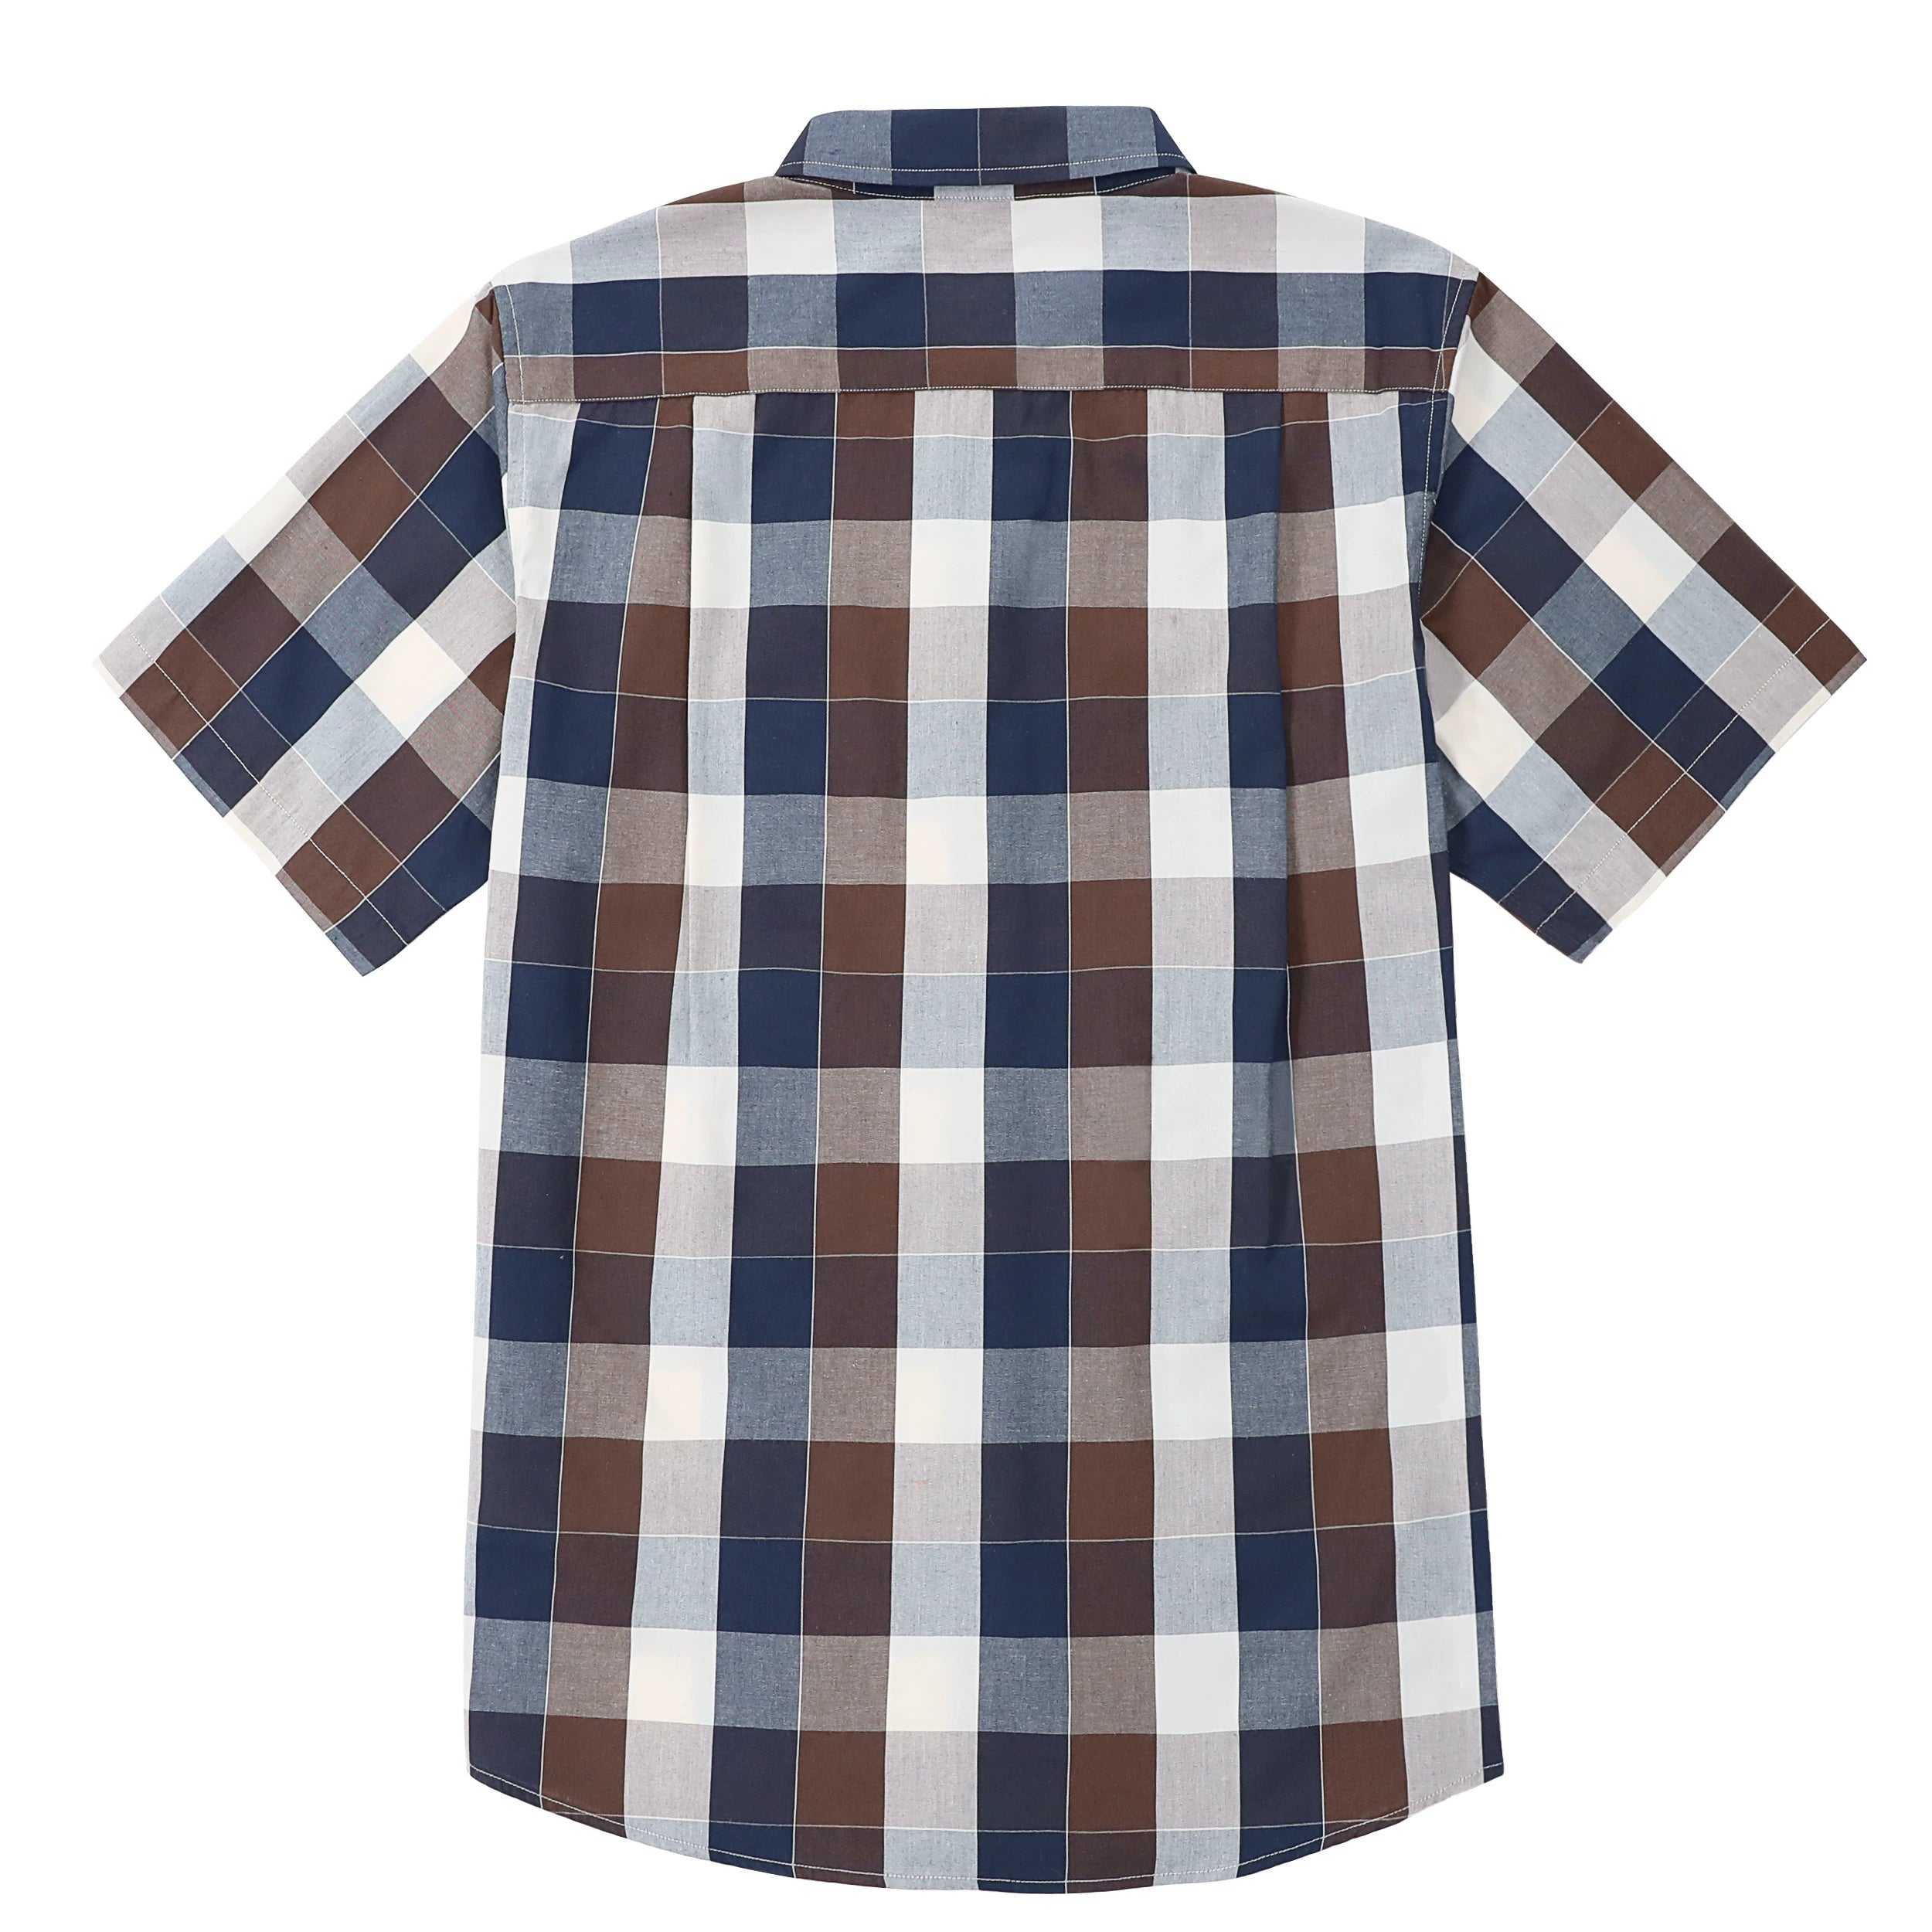 Dubinik® Mens Short Sleeve Button Down Shirts Summer Vintage Short Sleeve Button Down Men Lightweight Men's Casual Shirts#51010